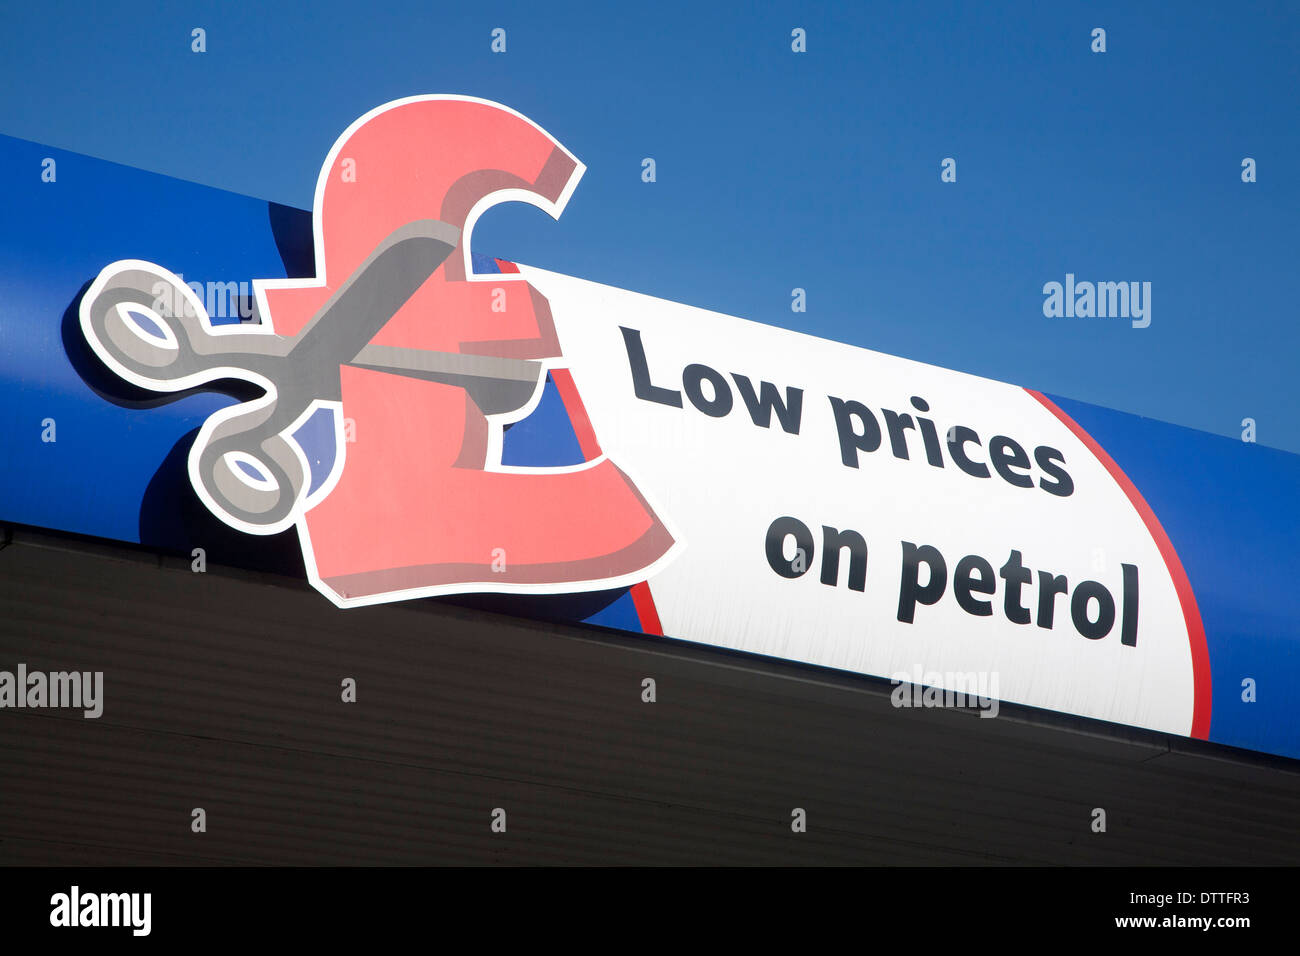 Tesco anuncio para los bajos precios de la gasolina, REINO UNIDO Foto de stock